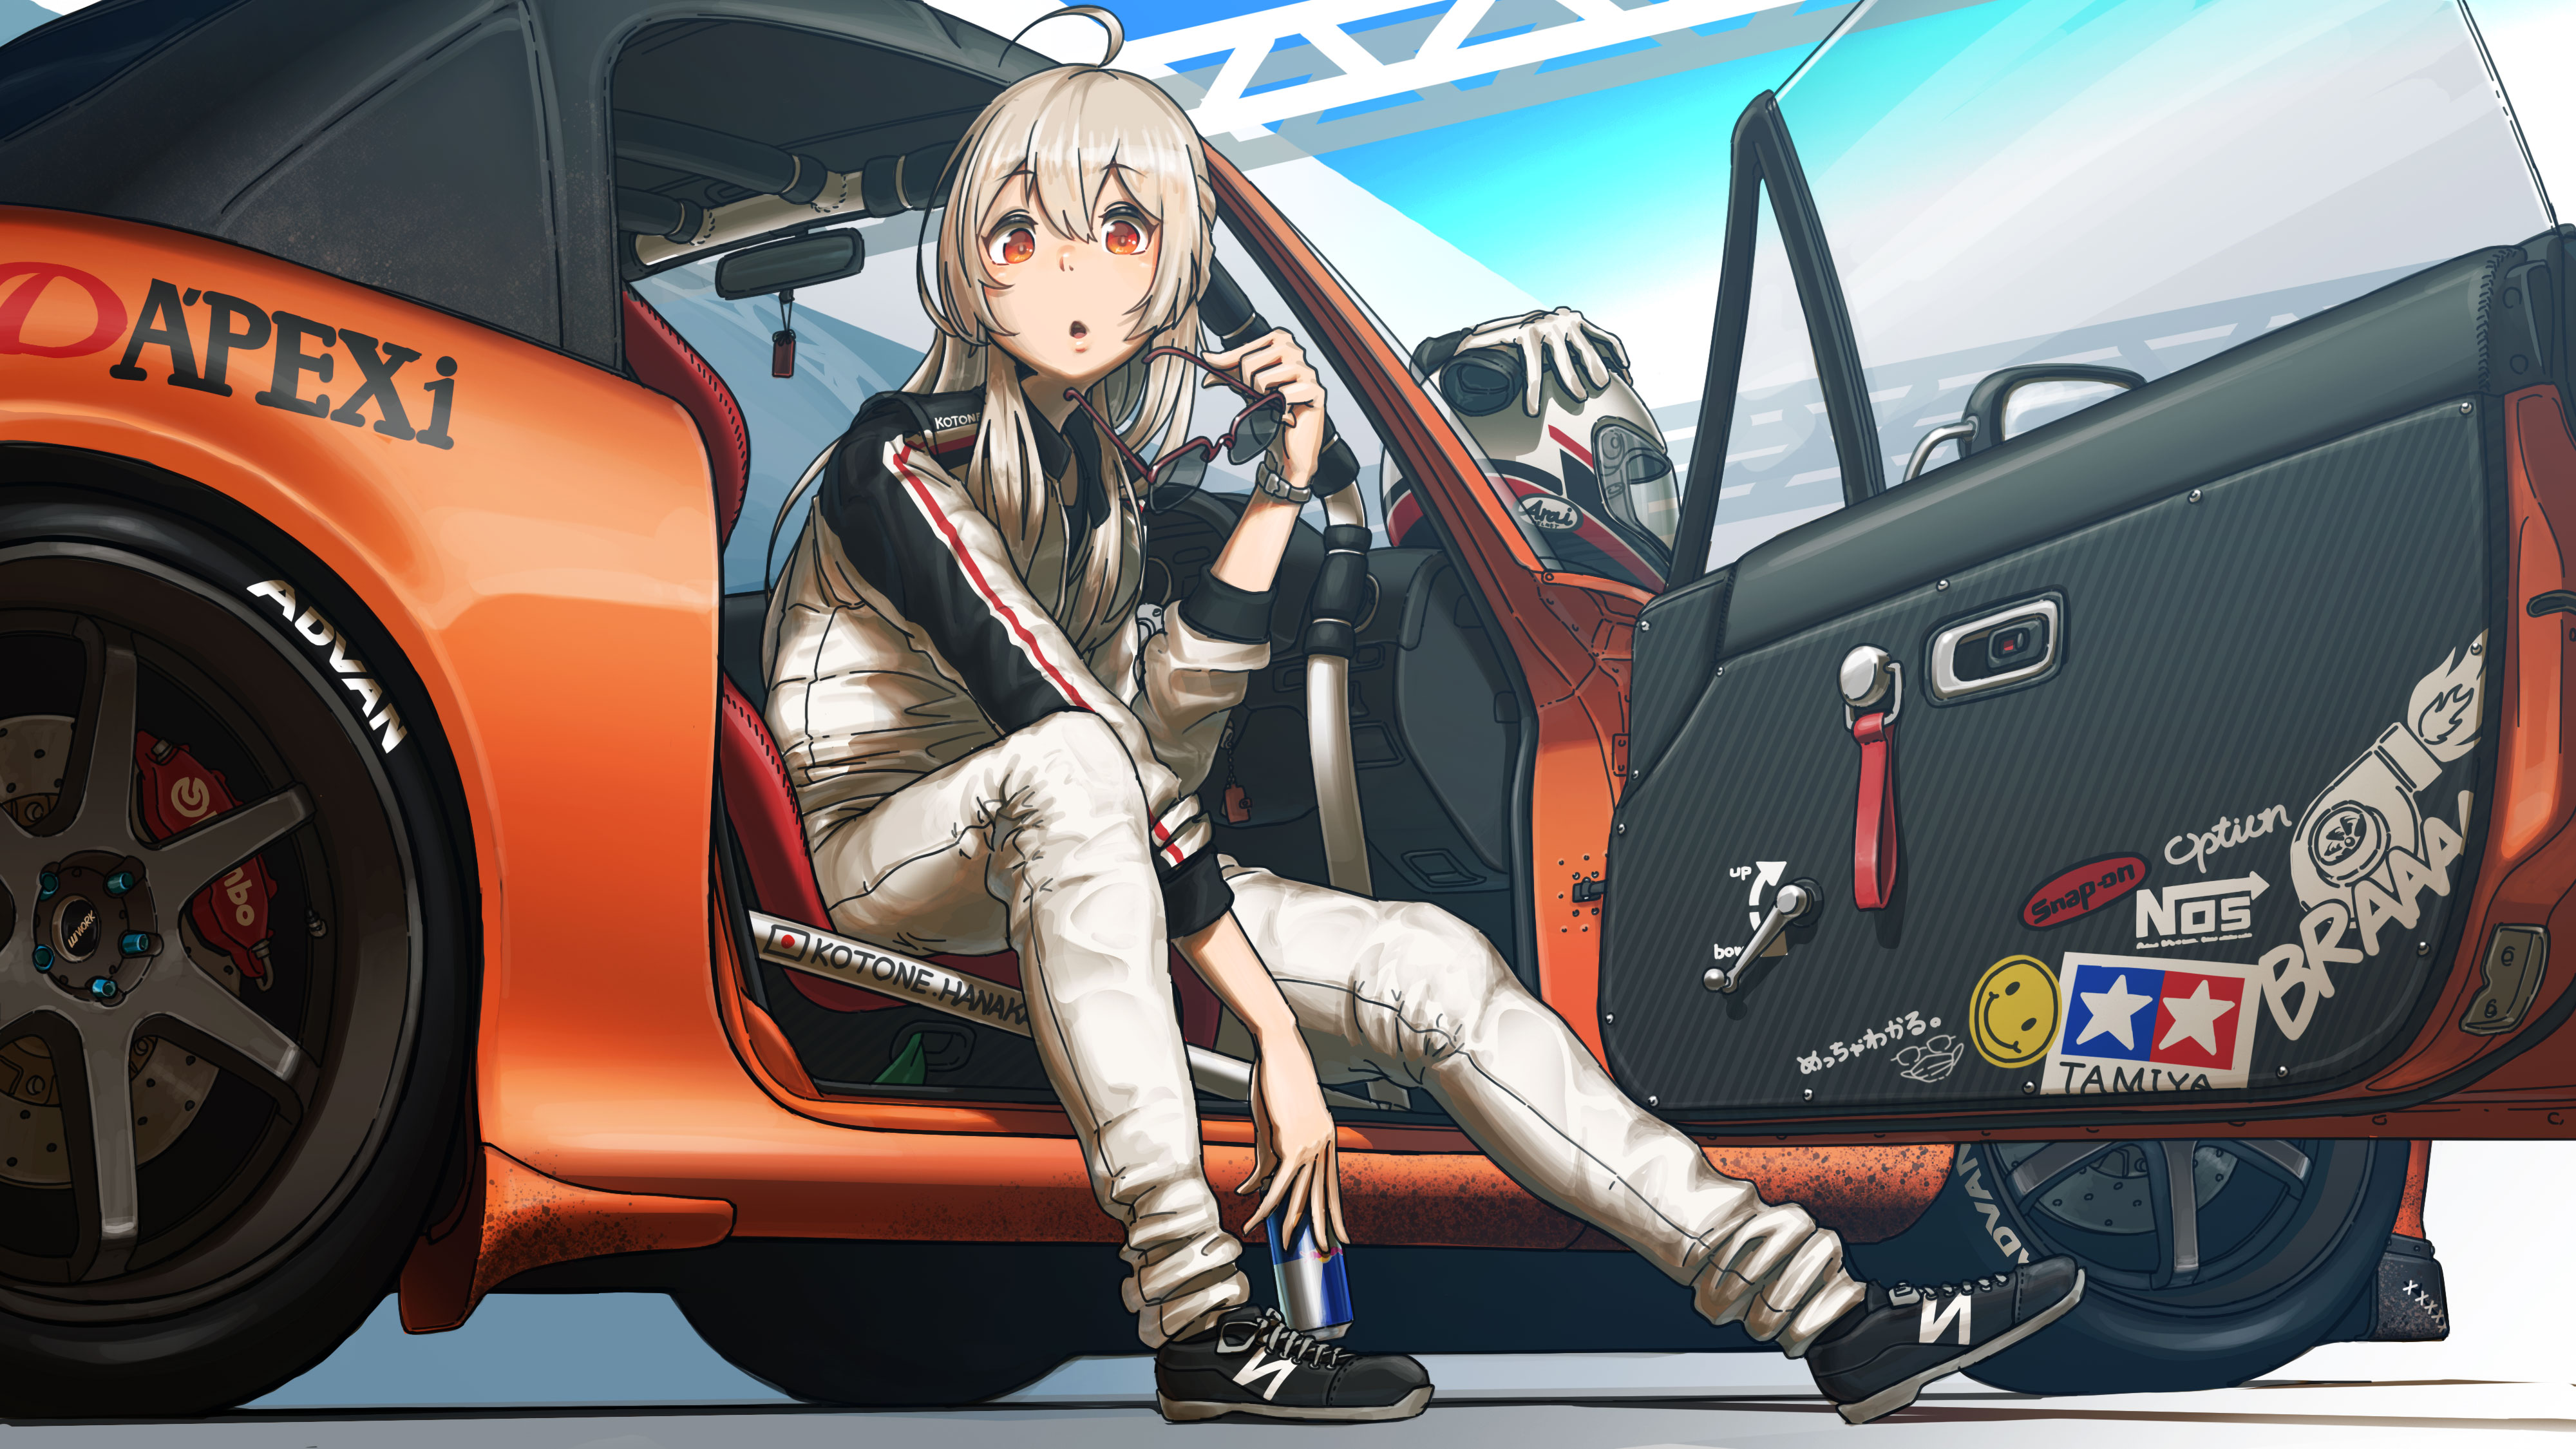 Anime Anime Girls Blonde Long Hair Red Eyes Glasses Sneakers Car Gloves Helmet Red Bull Off Road 4000x2250